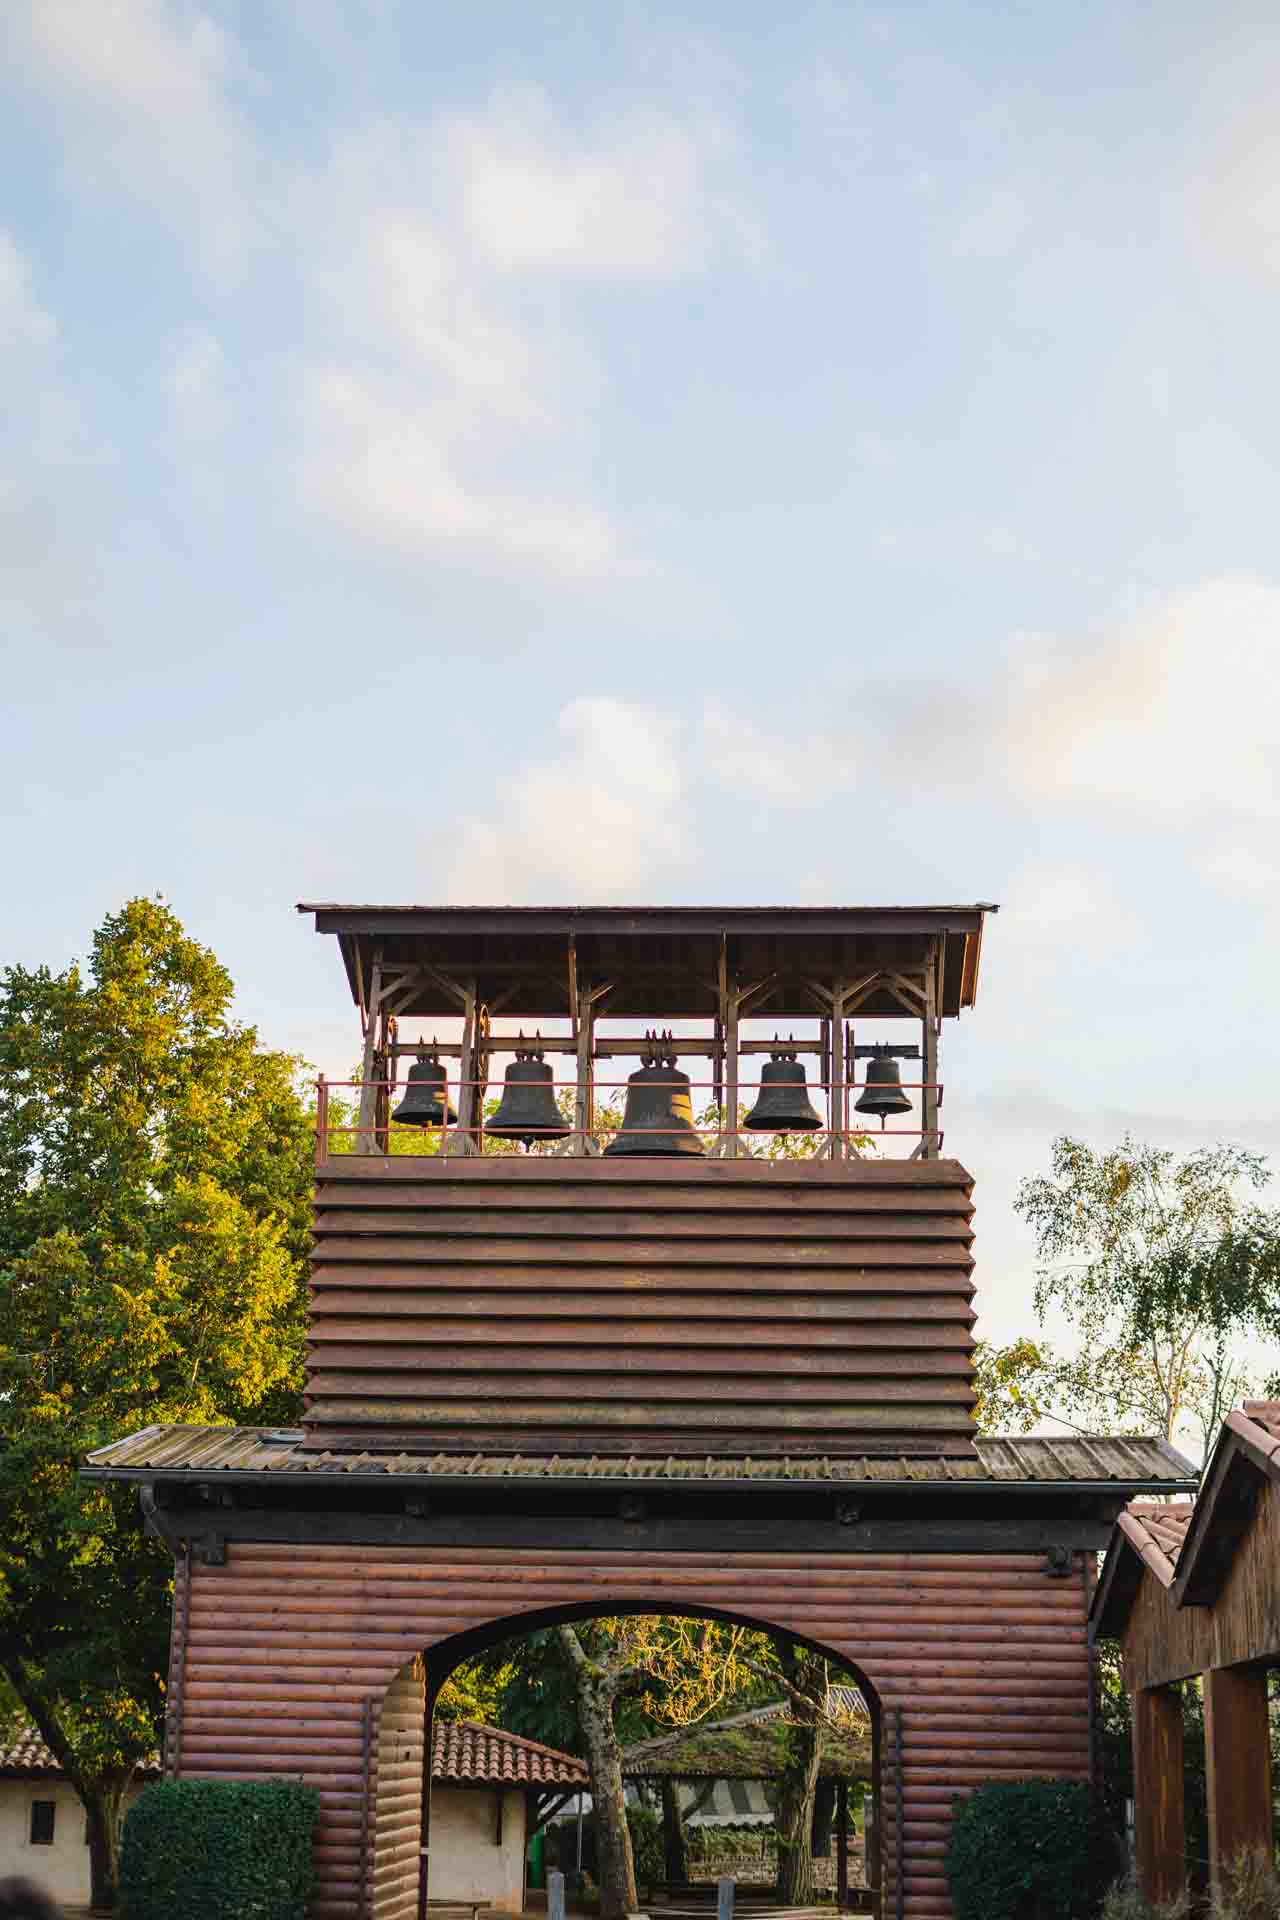 Glocken von Taize